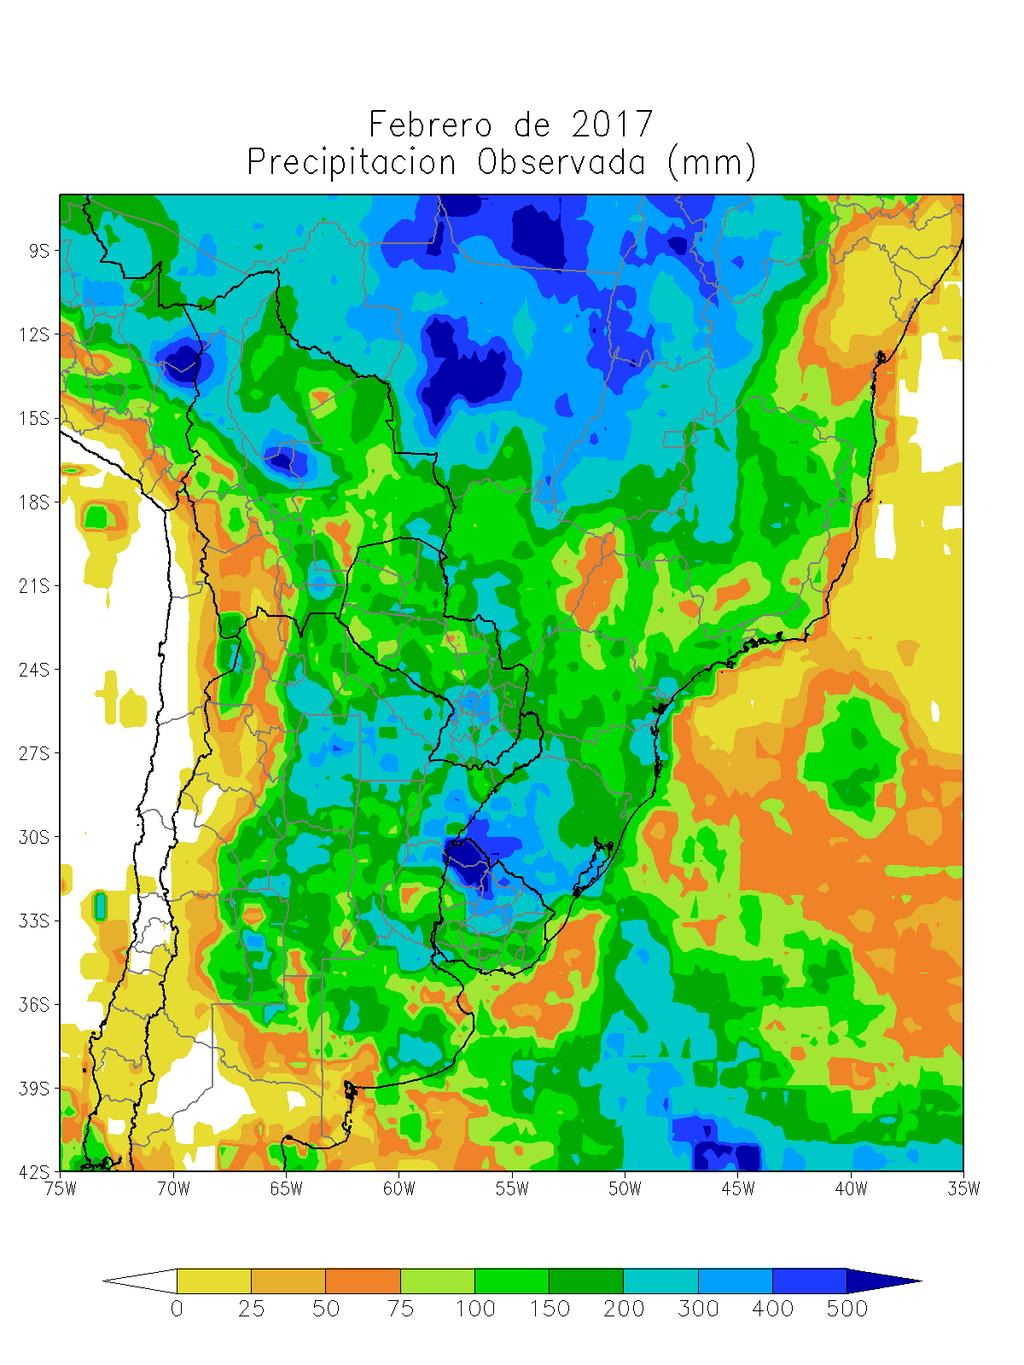 A pesar de desarrollarse un episodio de La Niña, la mayor parte del área del oeste de Sudamérica, donde este fenómeno produce precipitaciones abundantes, fue perjudicada por la acción negativa